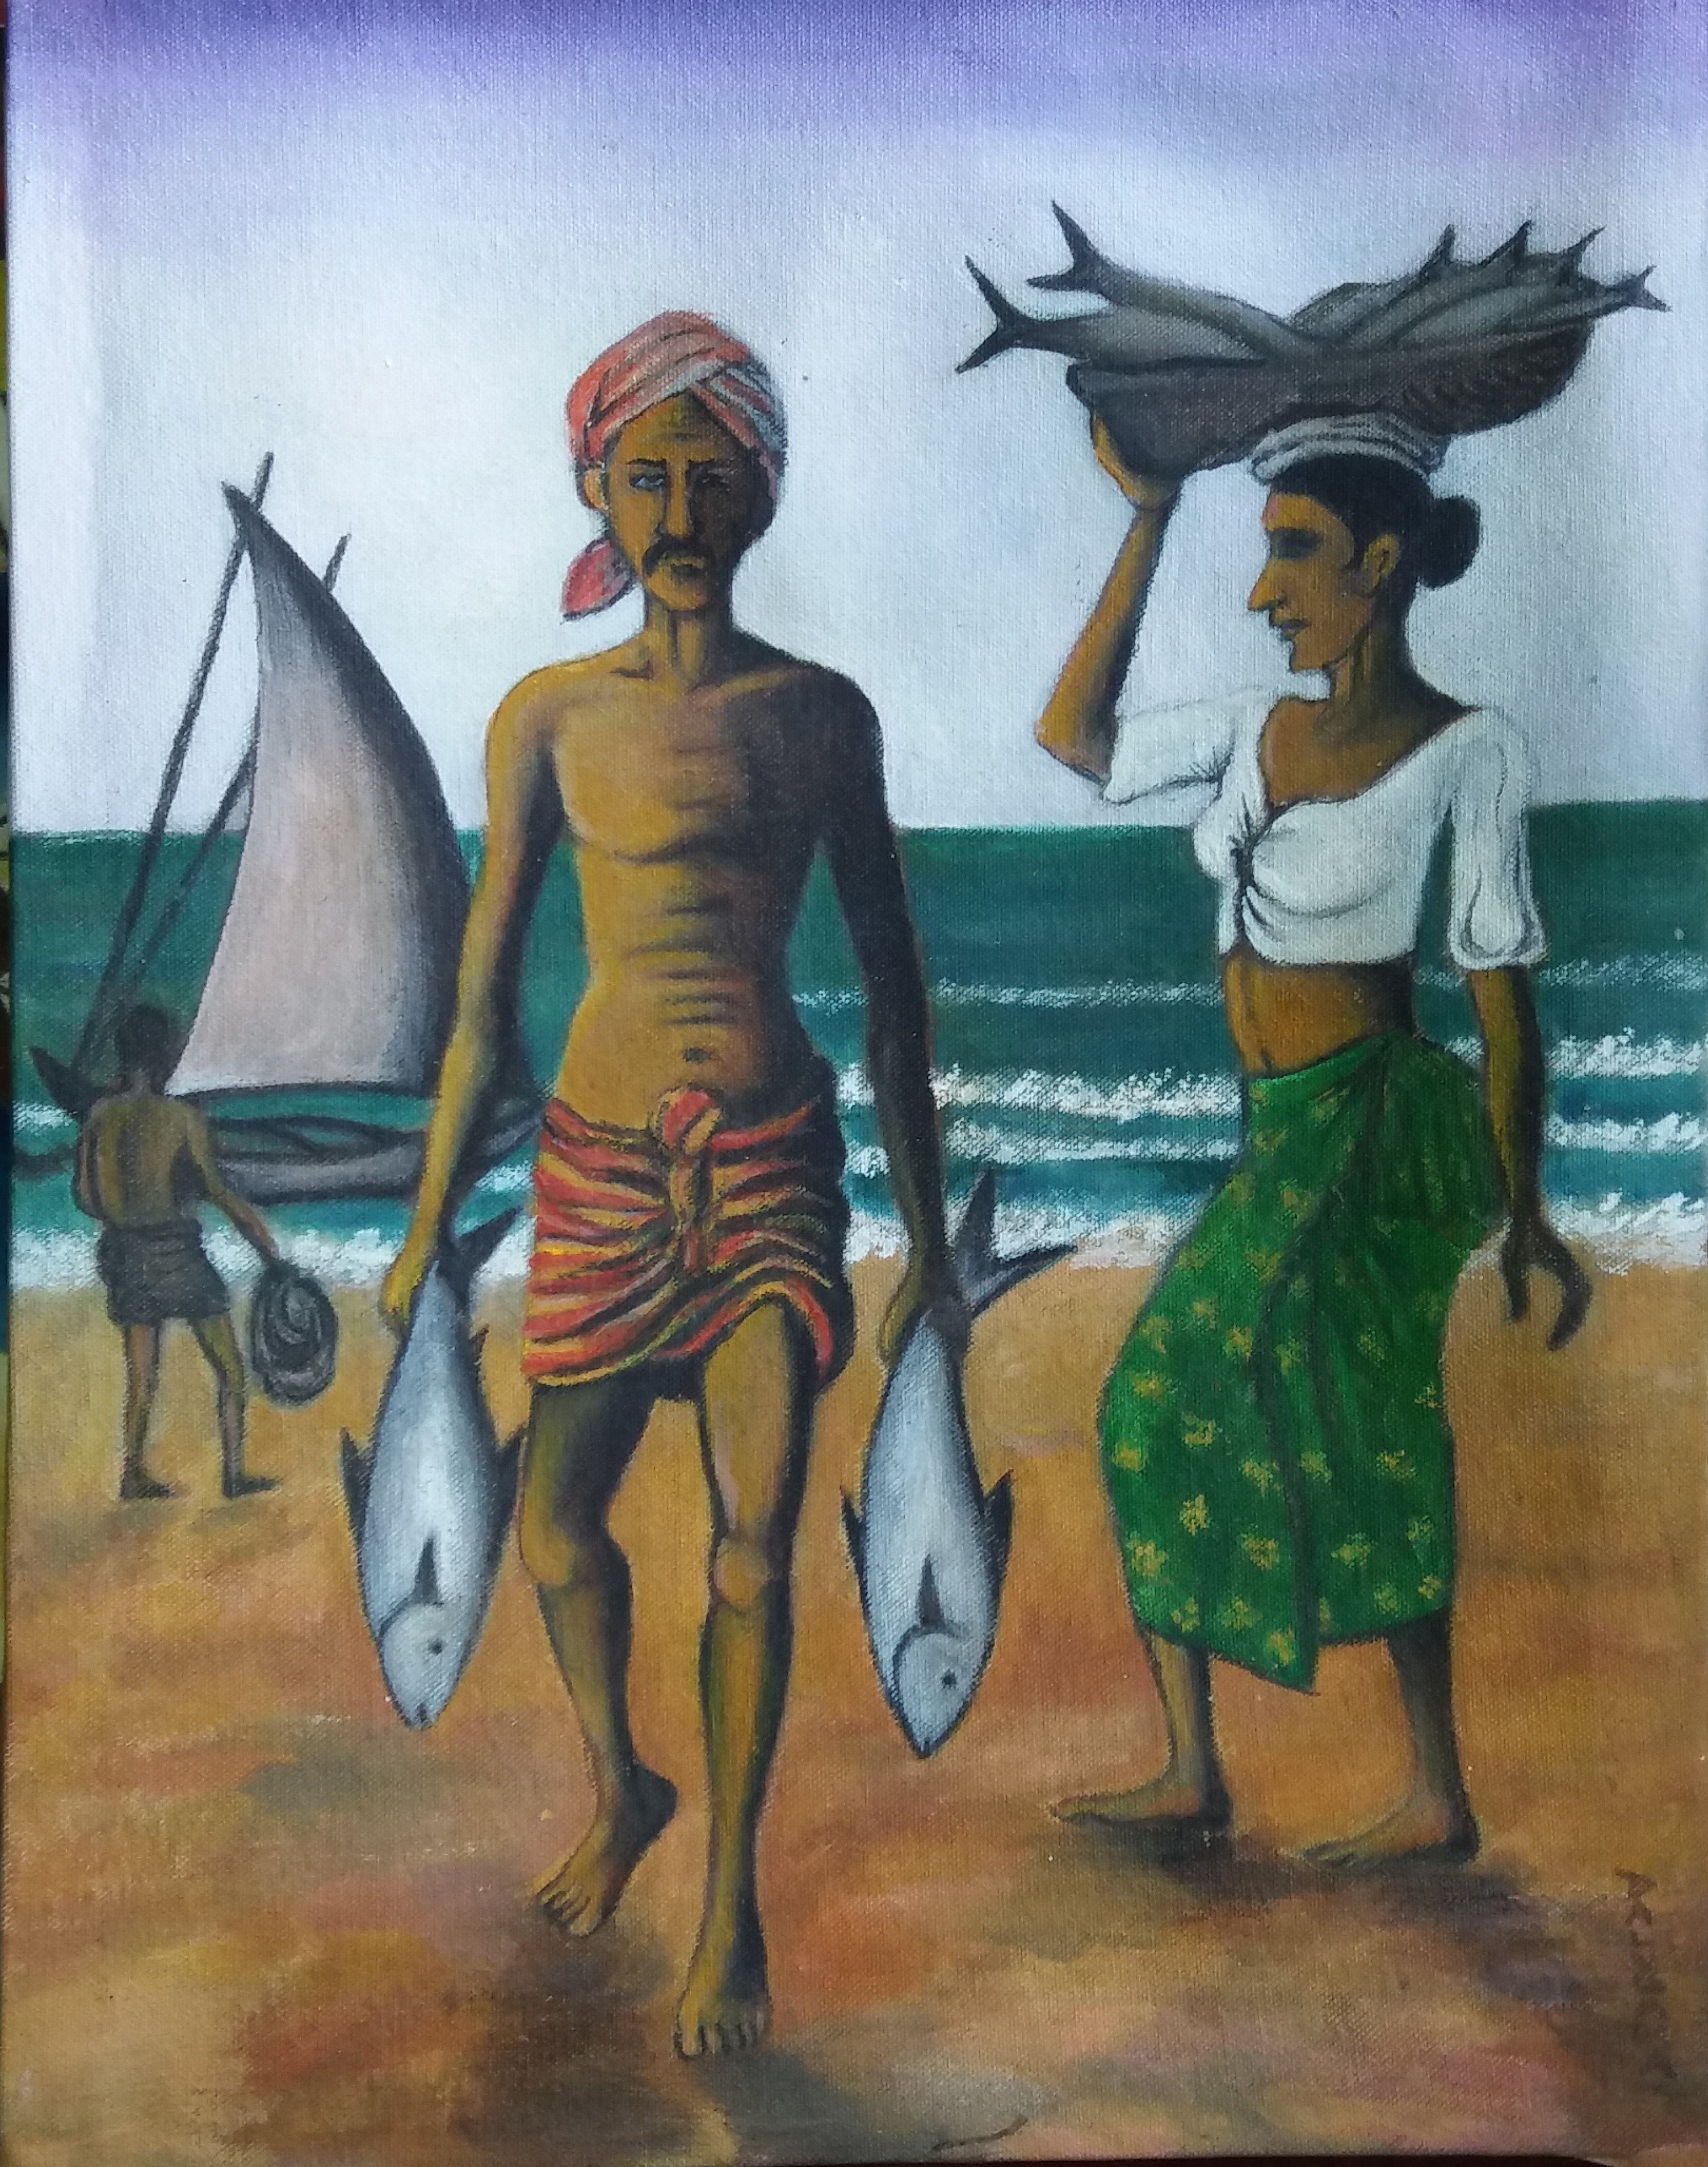 Fisher couple by Nandasena Dalugama